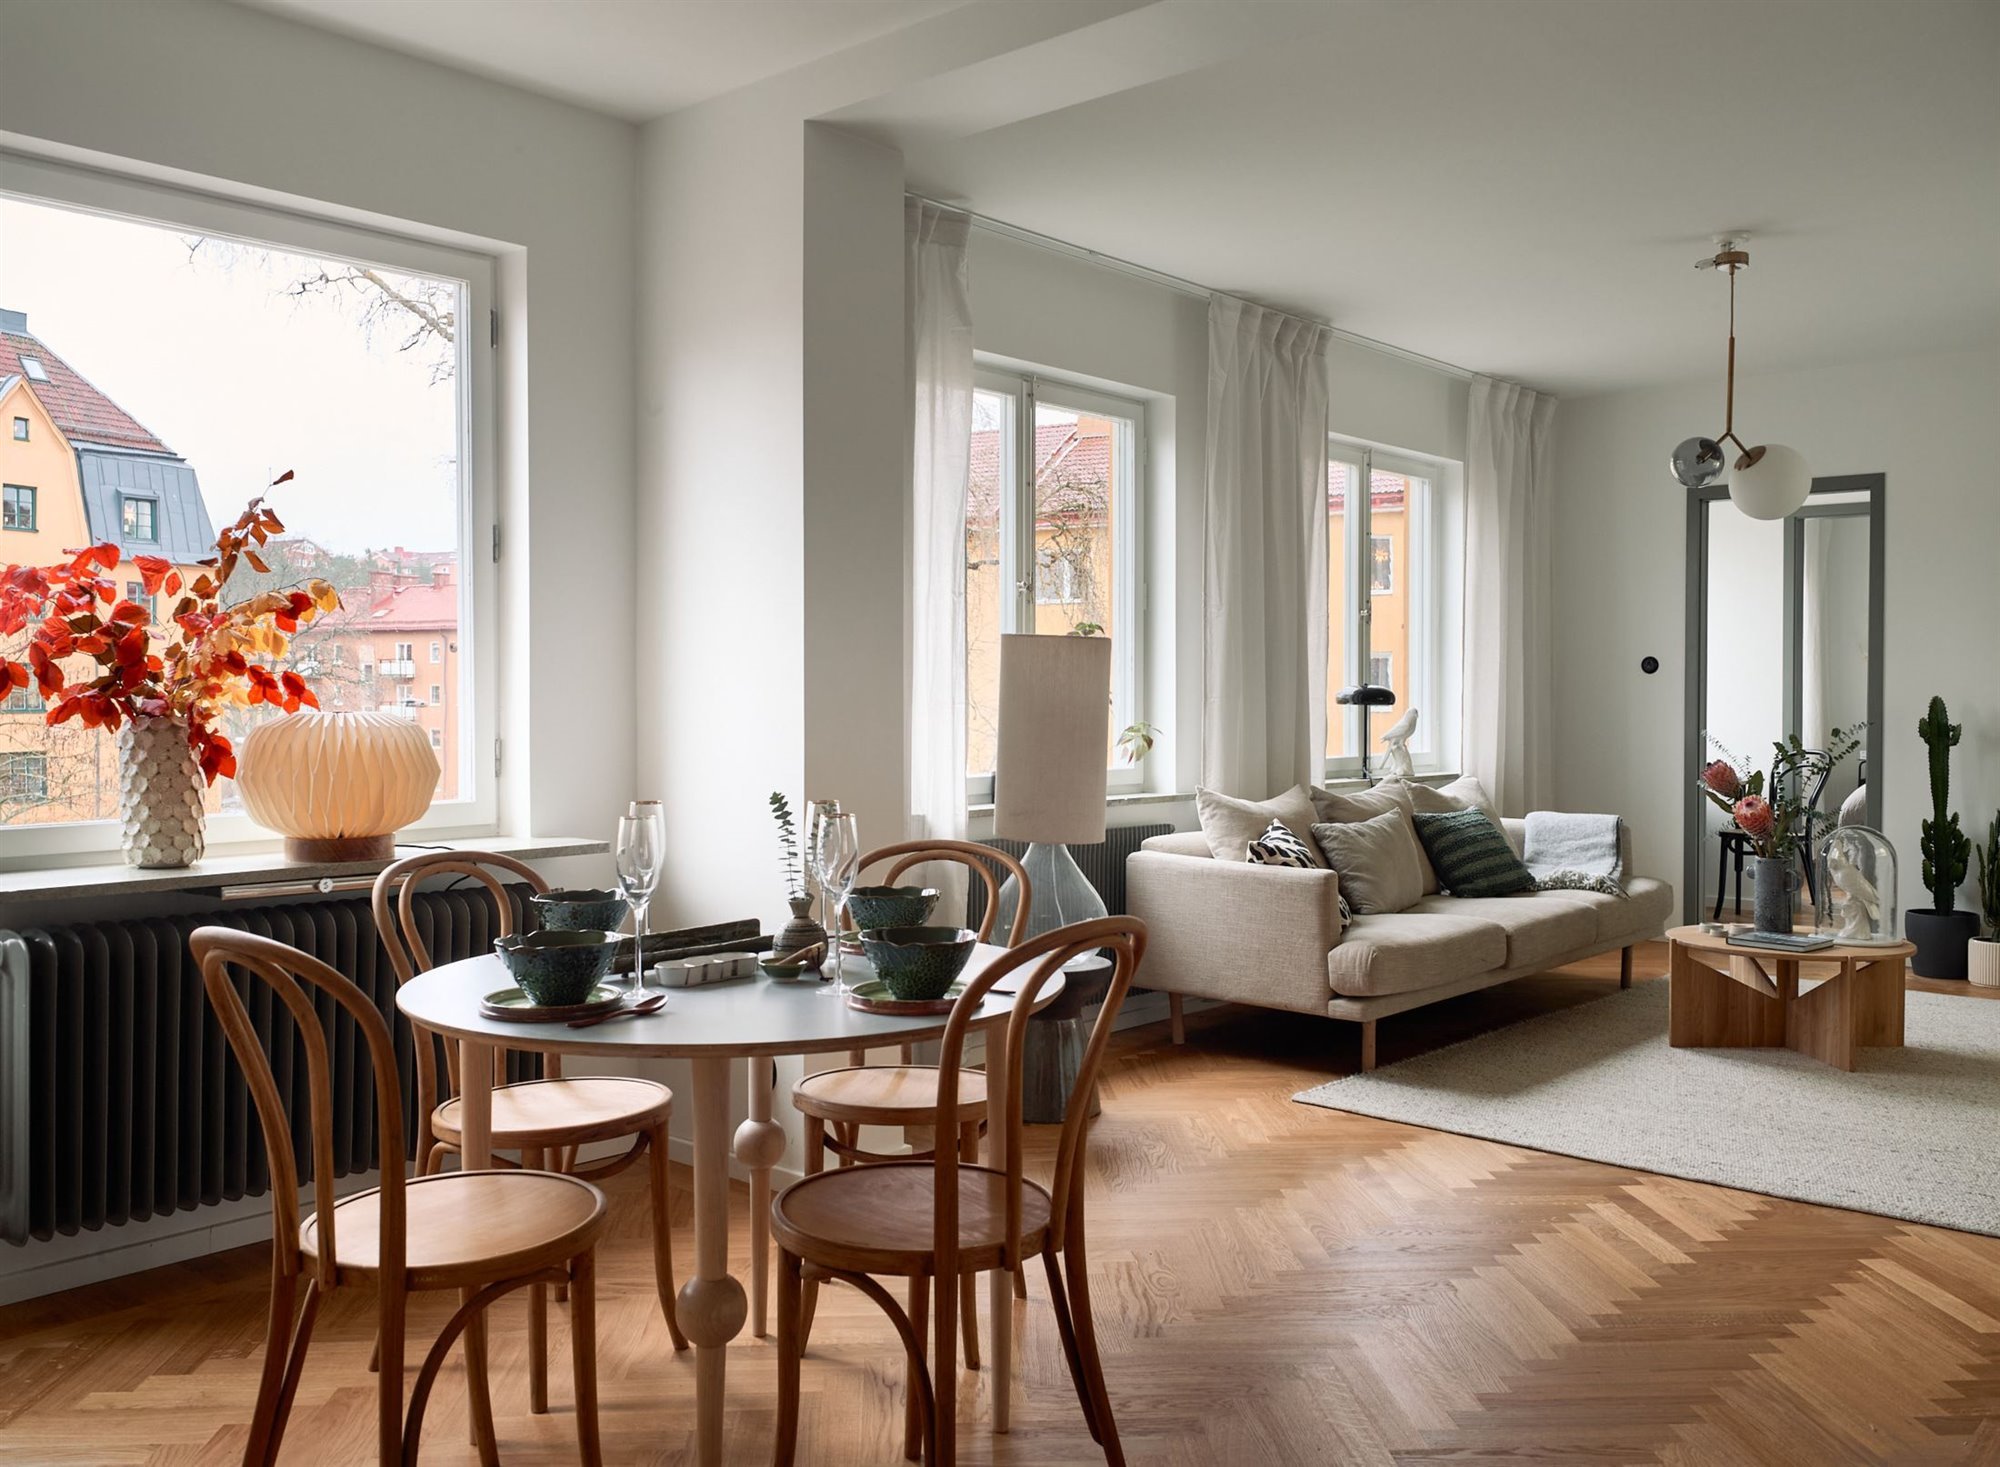 Piso en Suecia con interiores de estilo nordico paredes de color gris salon comedor